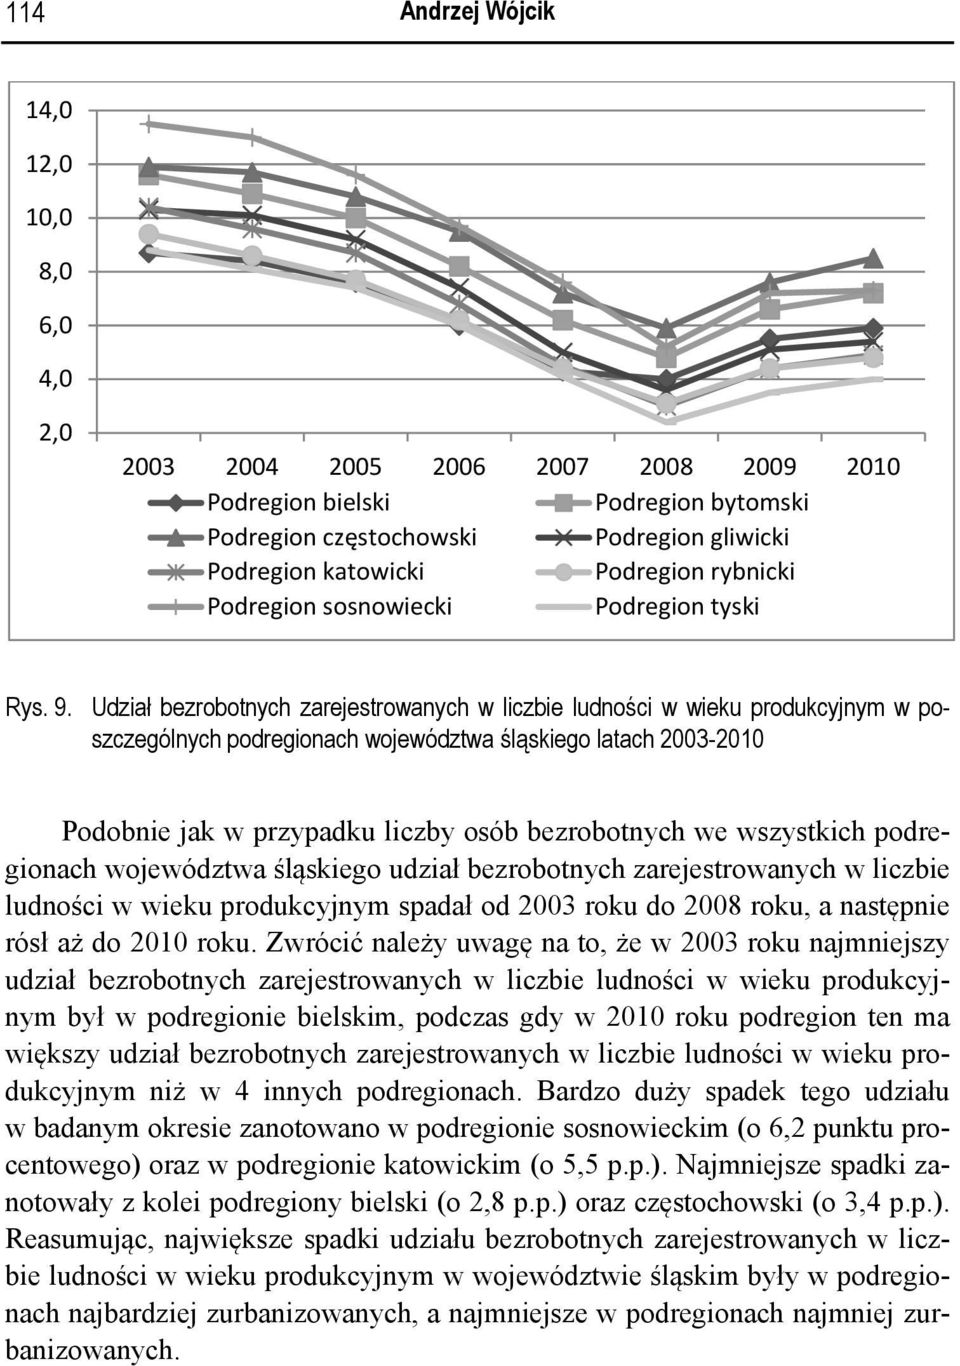 Udział bezrobotnych zarejestrowanych w liczbie ludności w wieku produkcyjnym w poszczególnych podregionach województwa śląskiego latach 2003-2010 Podobnie jak w przypadku liczby osób bezrobotnych we